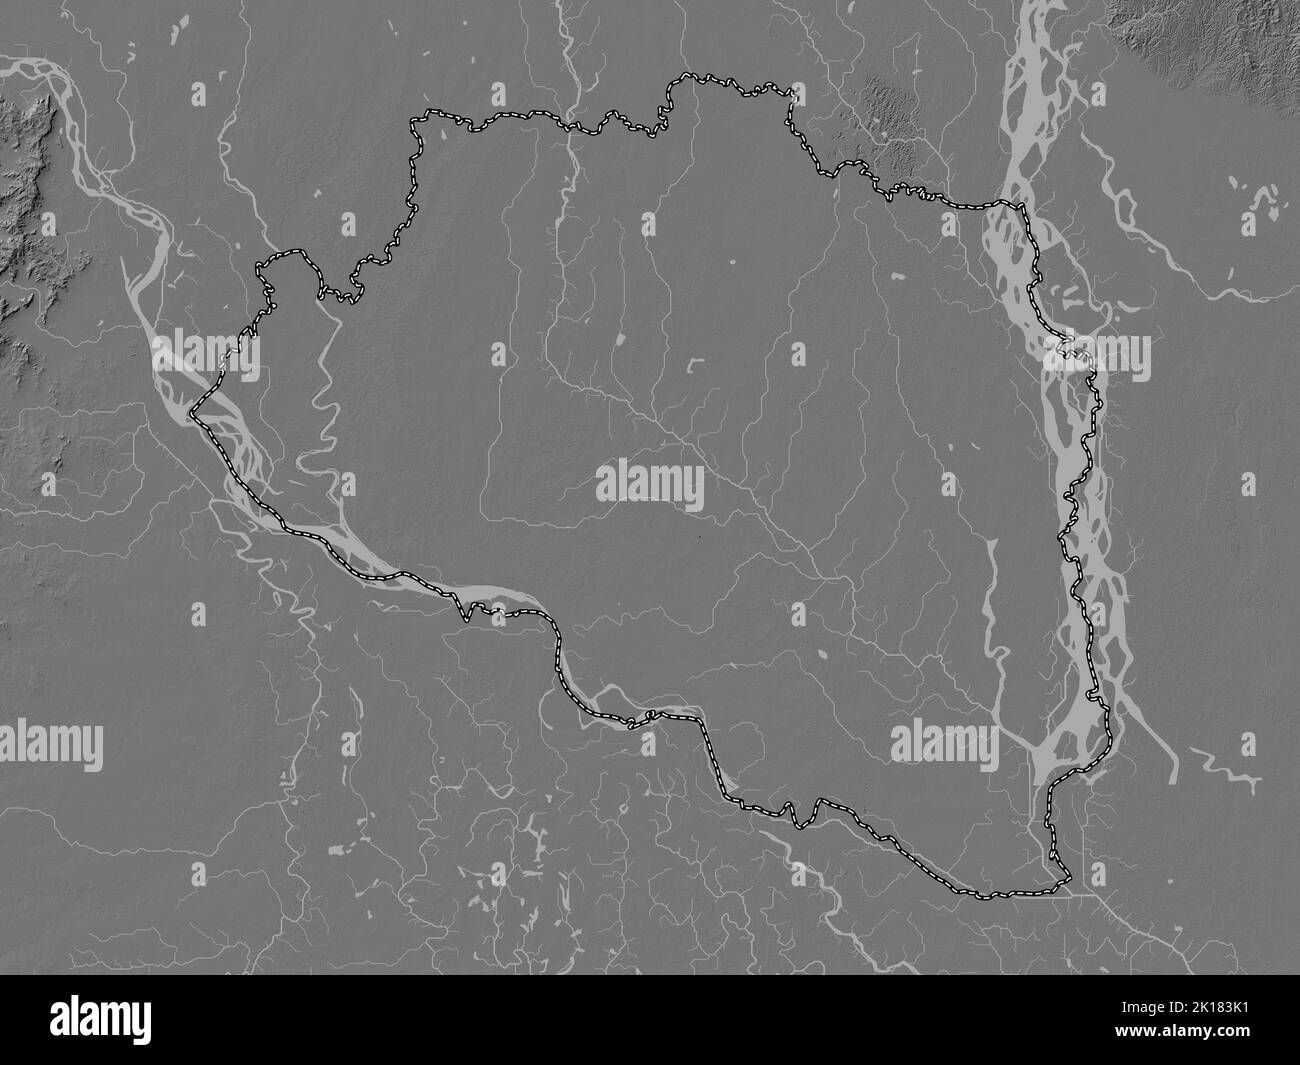 Rajshahi, division du Bangladesh. Carte d'altitude à deux niveaux avec lacs et rivières Banque D'Images